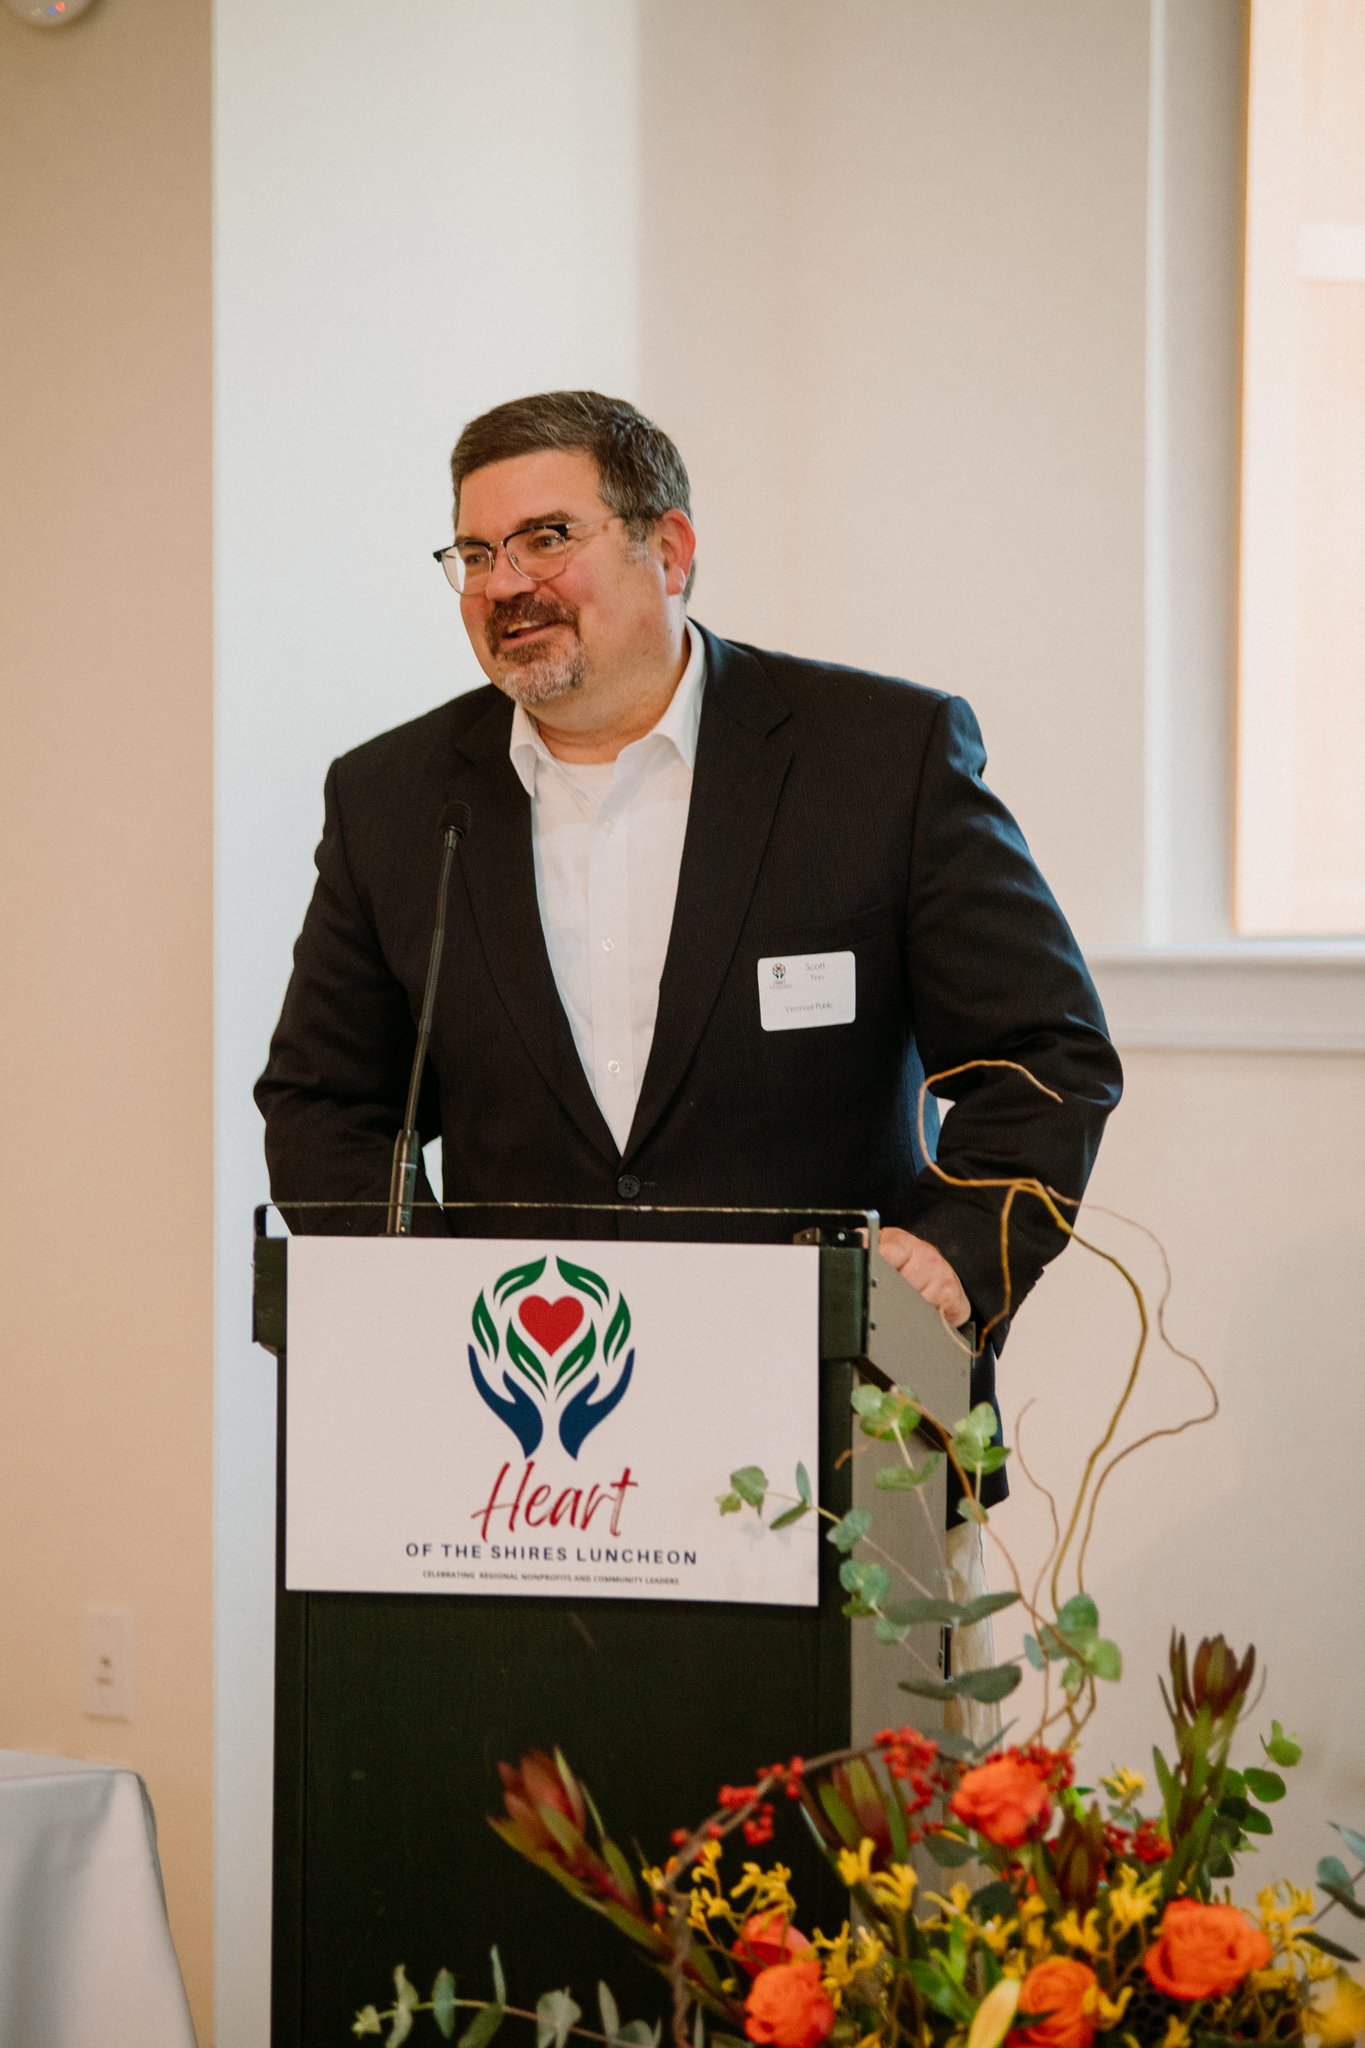 Keynote speaker Scott Finn, CEO of Vermont Public